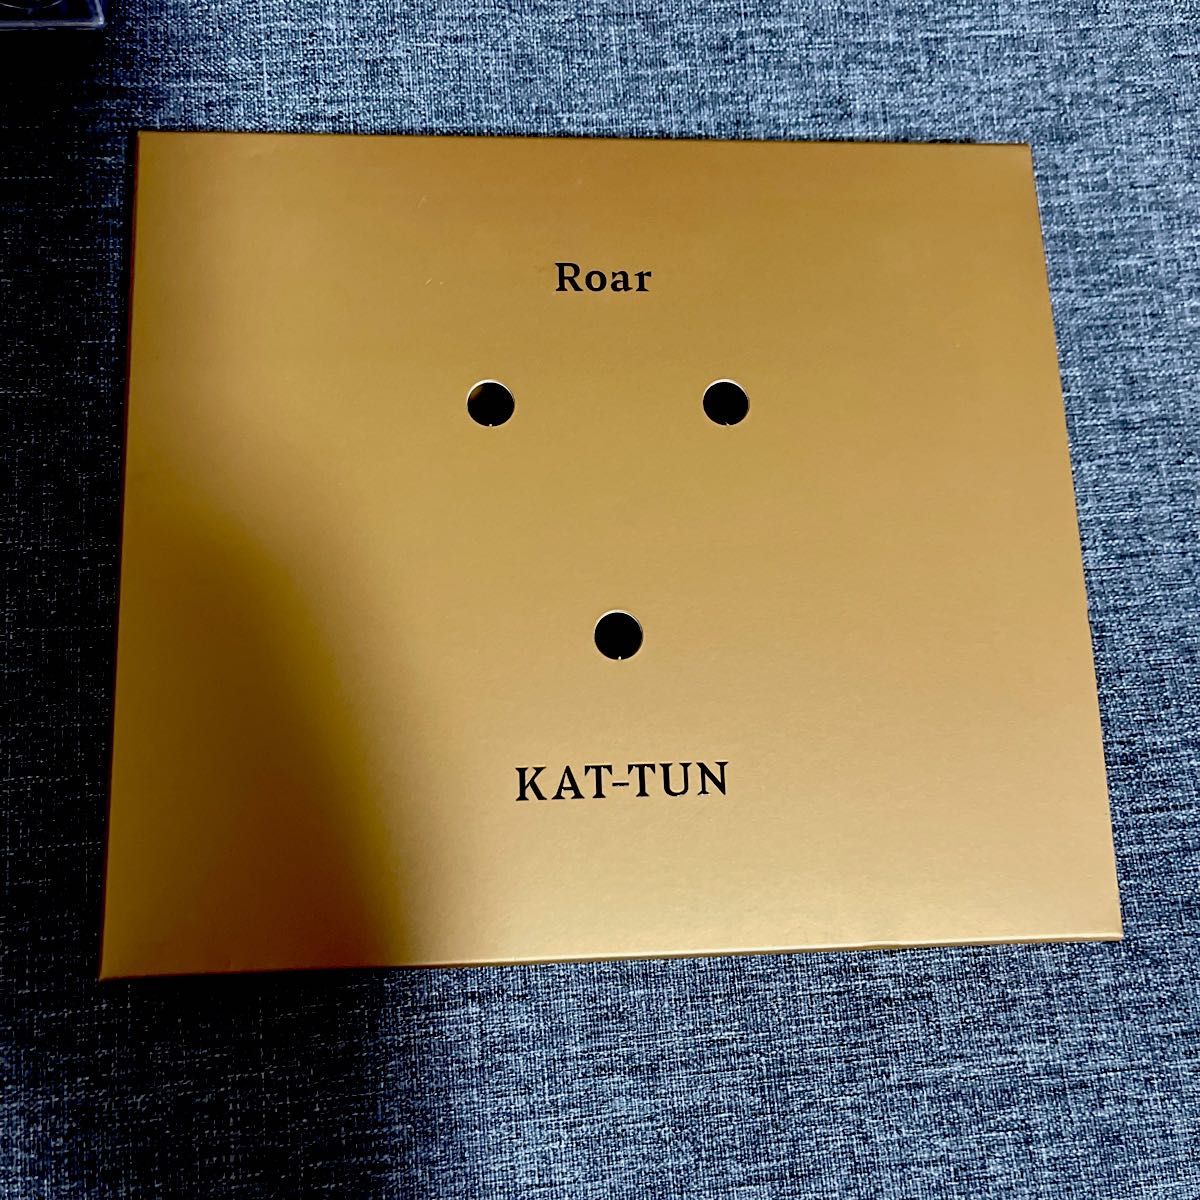  初回限定盤 (取) DVD付 三方背スリーブケース仕様 KAT-TUN CD+DVD/Roar 21/3/10発売